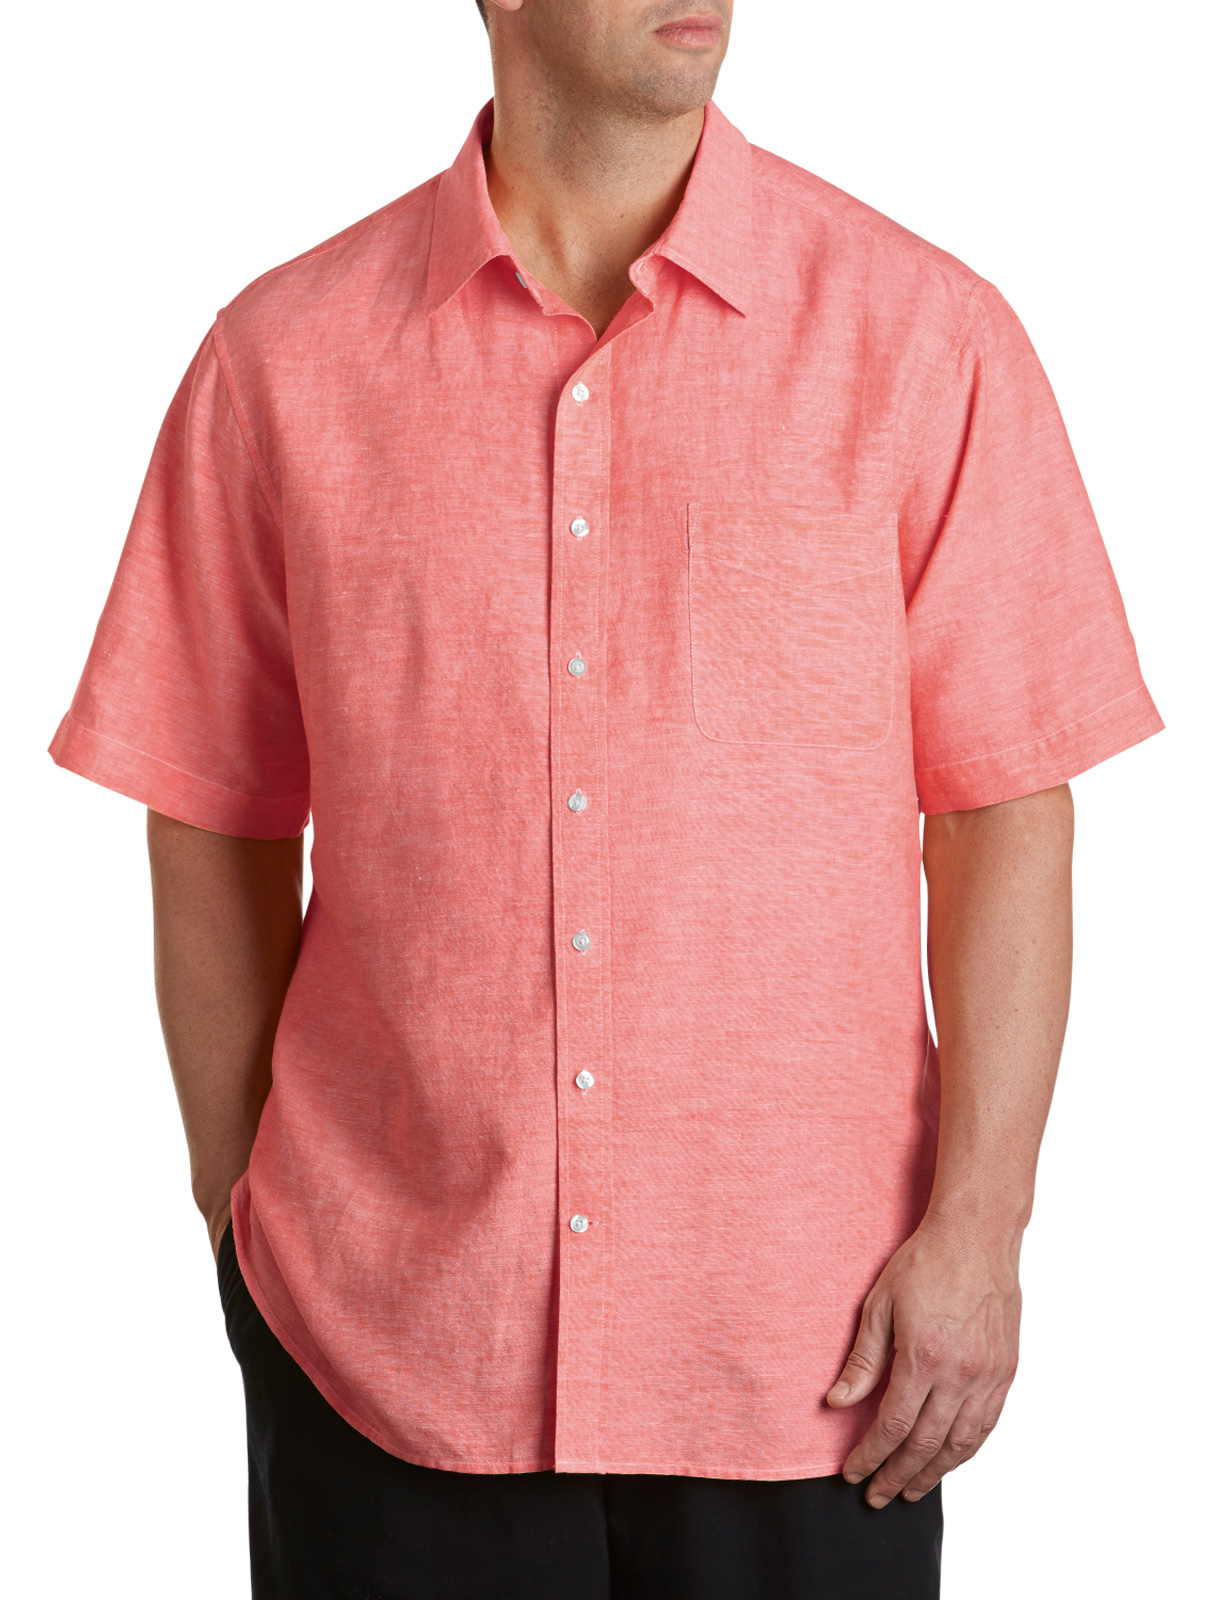 Oak Hill Cotton/Linen Sport Shirt